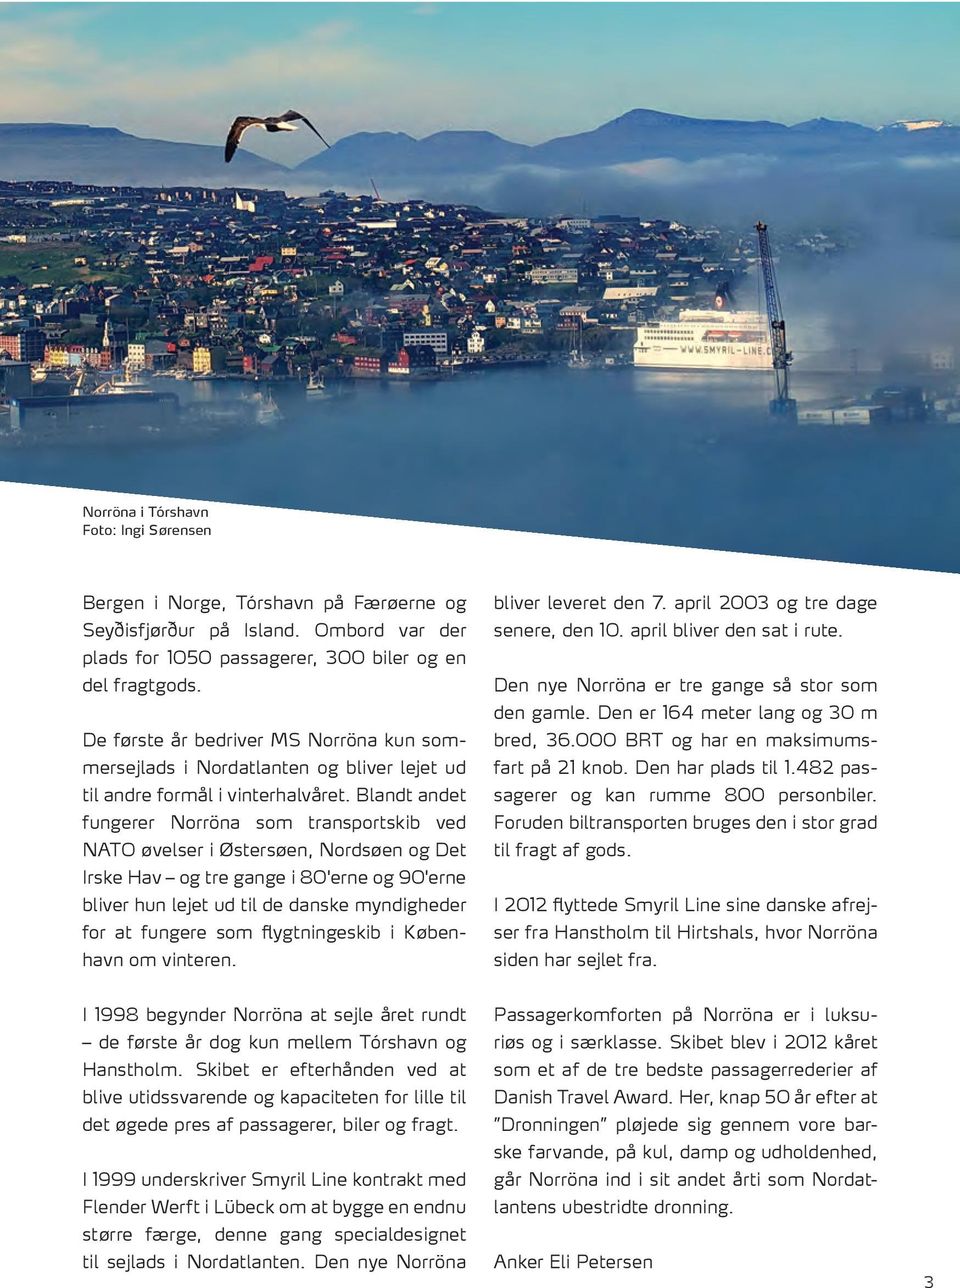 Blandt andet fungerer Norröna som transportskib ved NATO øvelser i Østersøen, Nordsøen og Det Irske Hav og tre gange i 80'erne og 90'erne bliver hun lejet ud til de danske myndigheder for at fungere